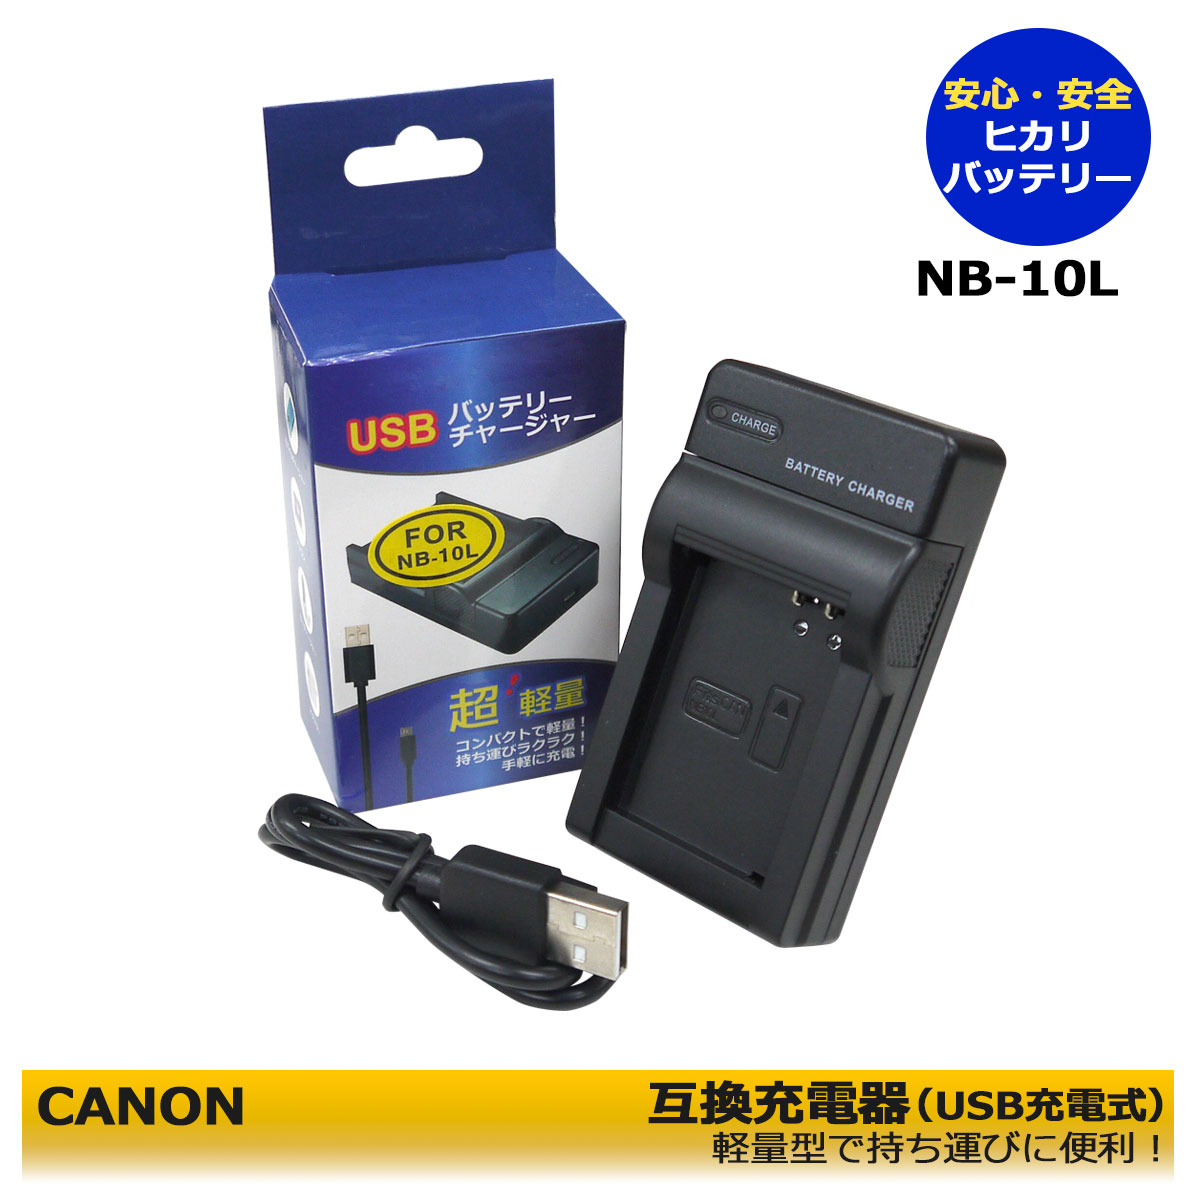 キャノン NB-2L NB-2LH Micro USB付き 急速充電器 互換品